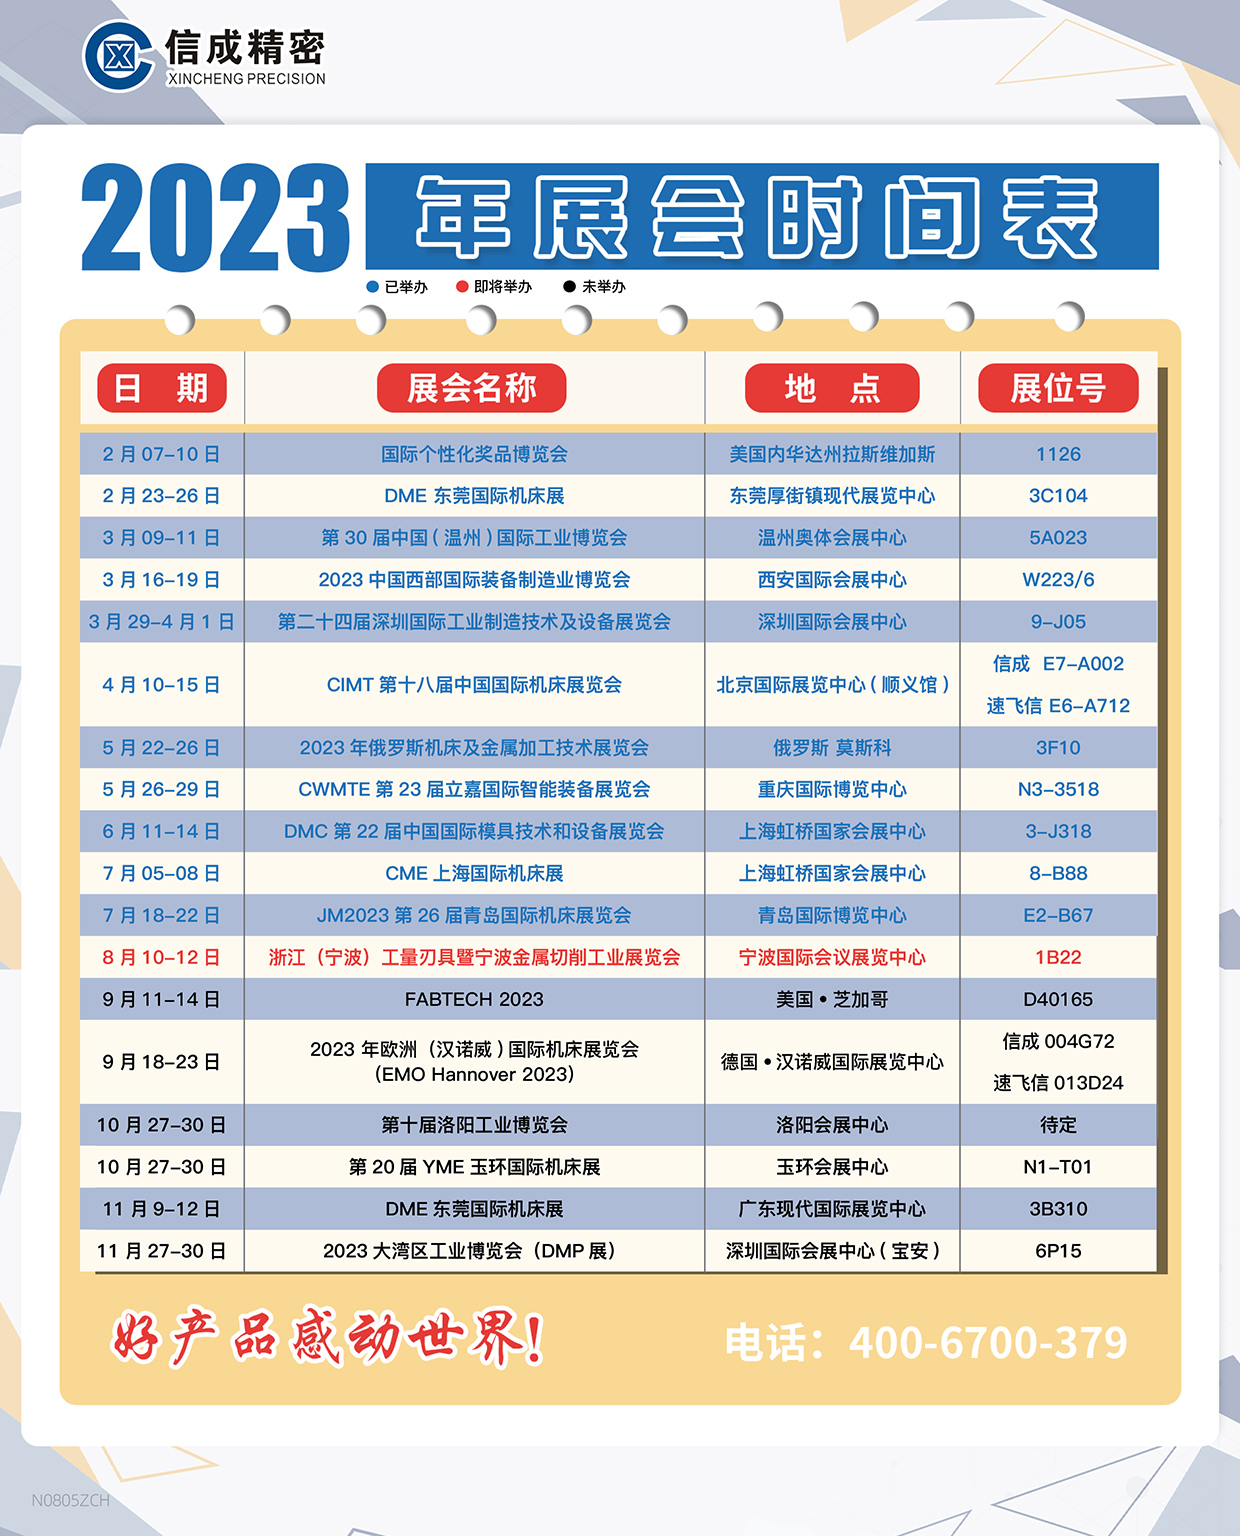 洛阳信成2023年下半年展会安排时间表